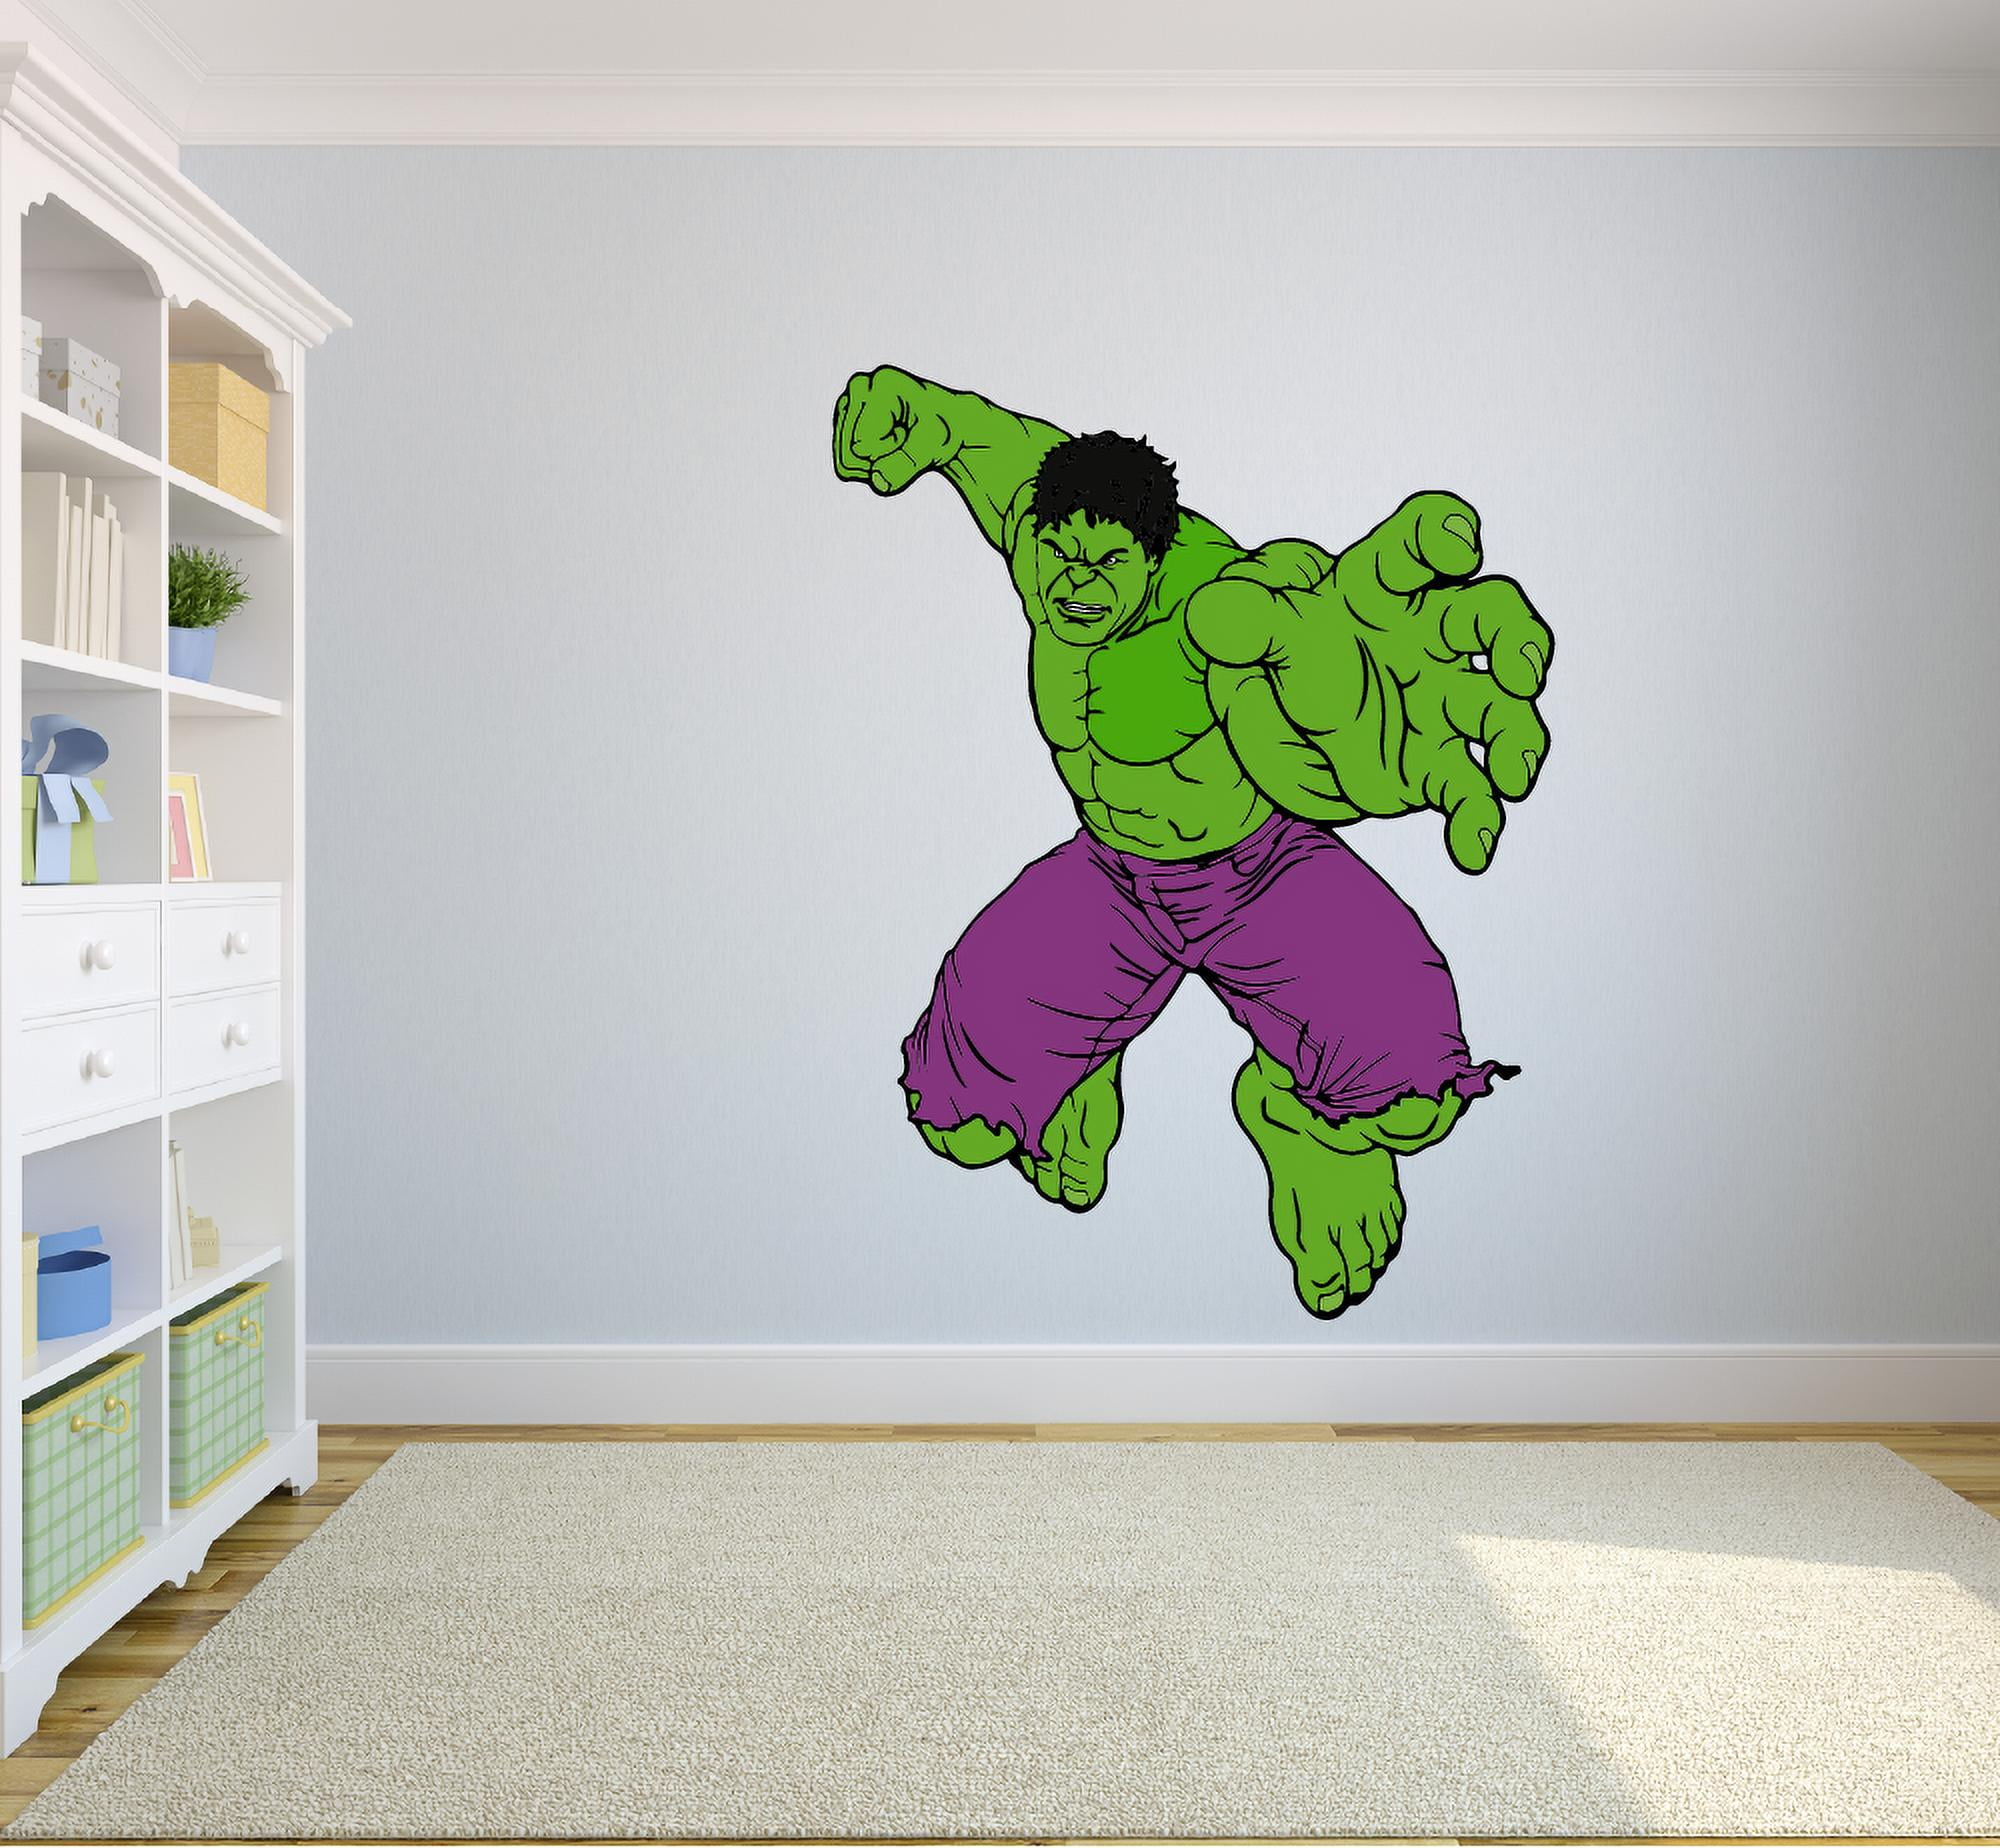 3D Cartoon Super Hero Avengers Hulk Wall Sticker Kids Room Decor Vinyl Decal